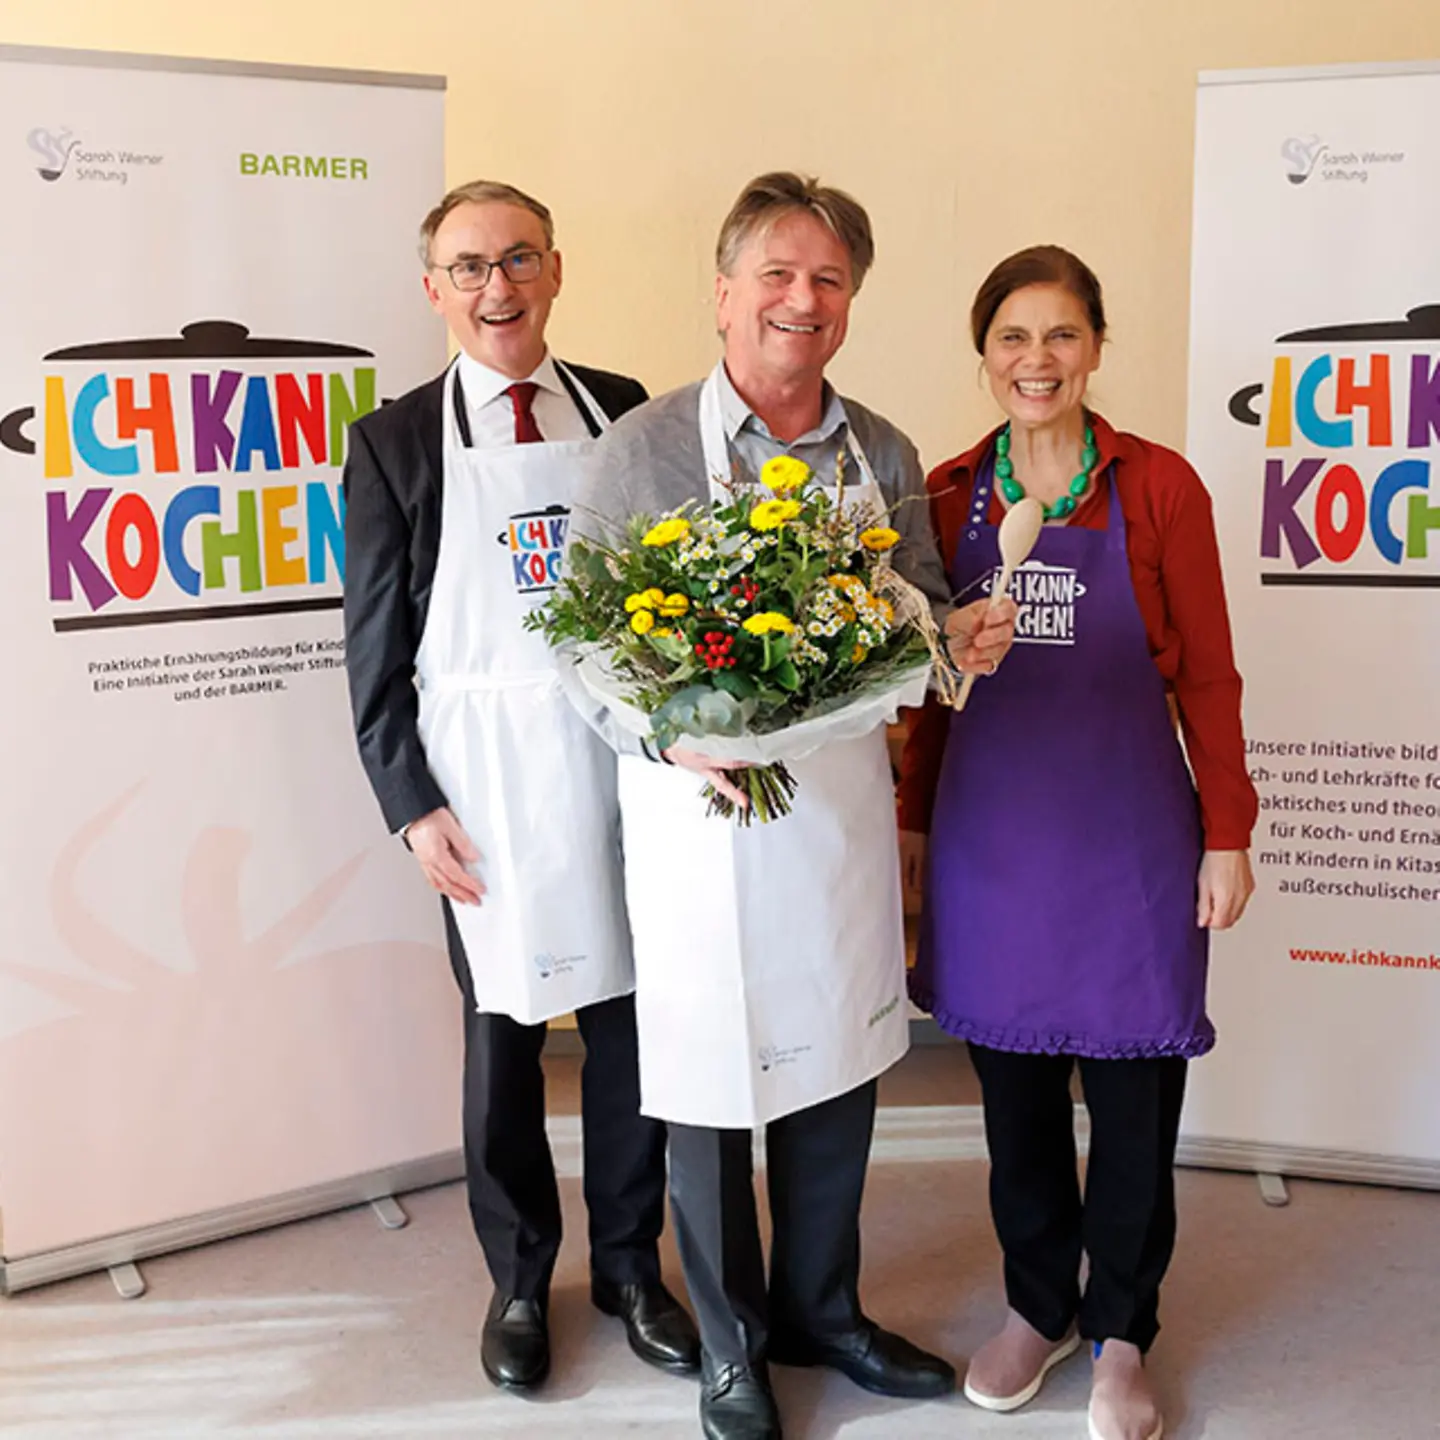 Barmer-Vorstandsvorsitzender Prof. Dr. Christoph Straub, Manne Lucha mit einem Blumenstrauß in der Hand und Köchin Sarah Wiener stehen zusammen und lächeln in die Kamera.